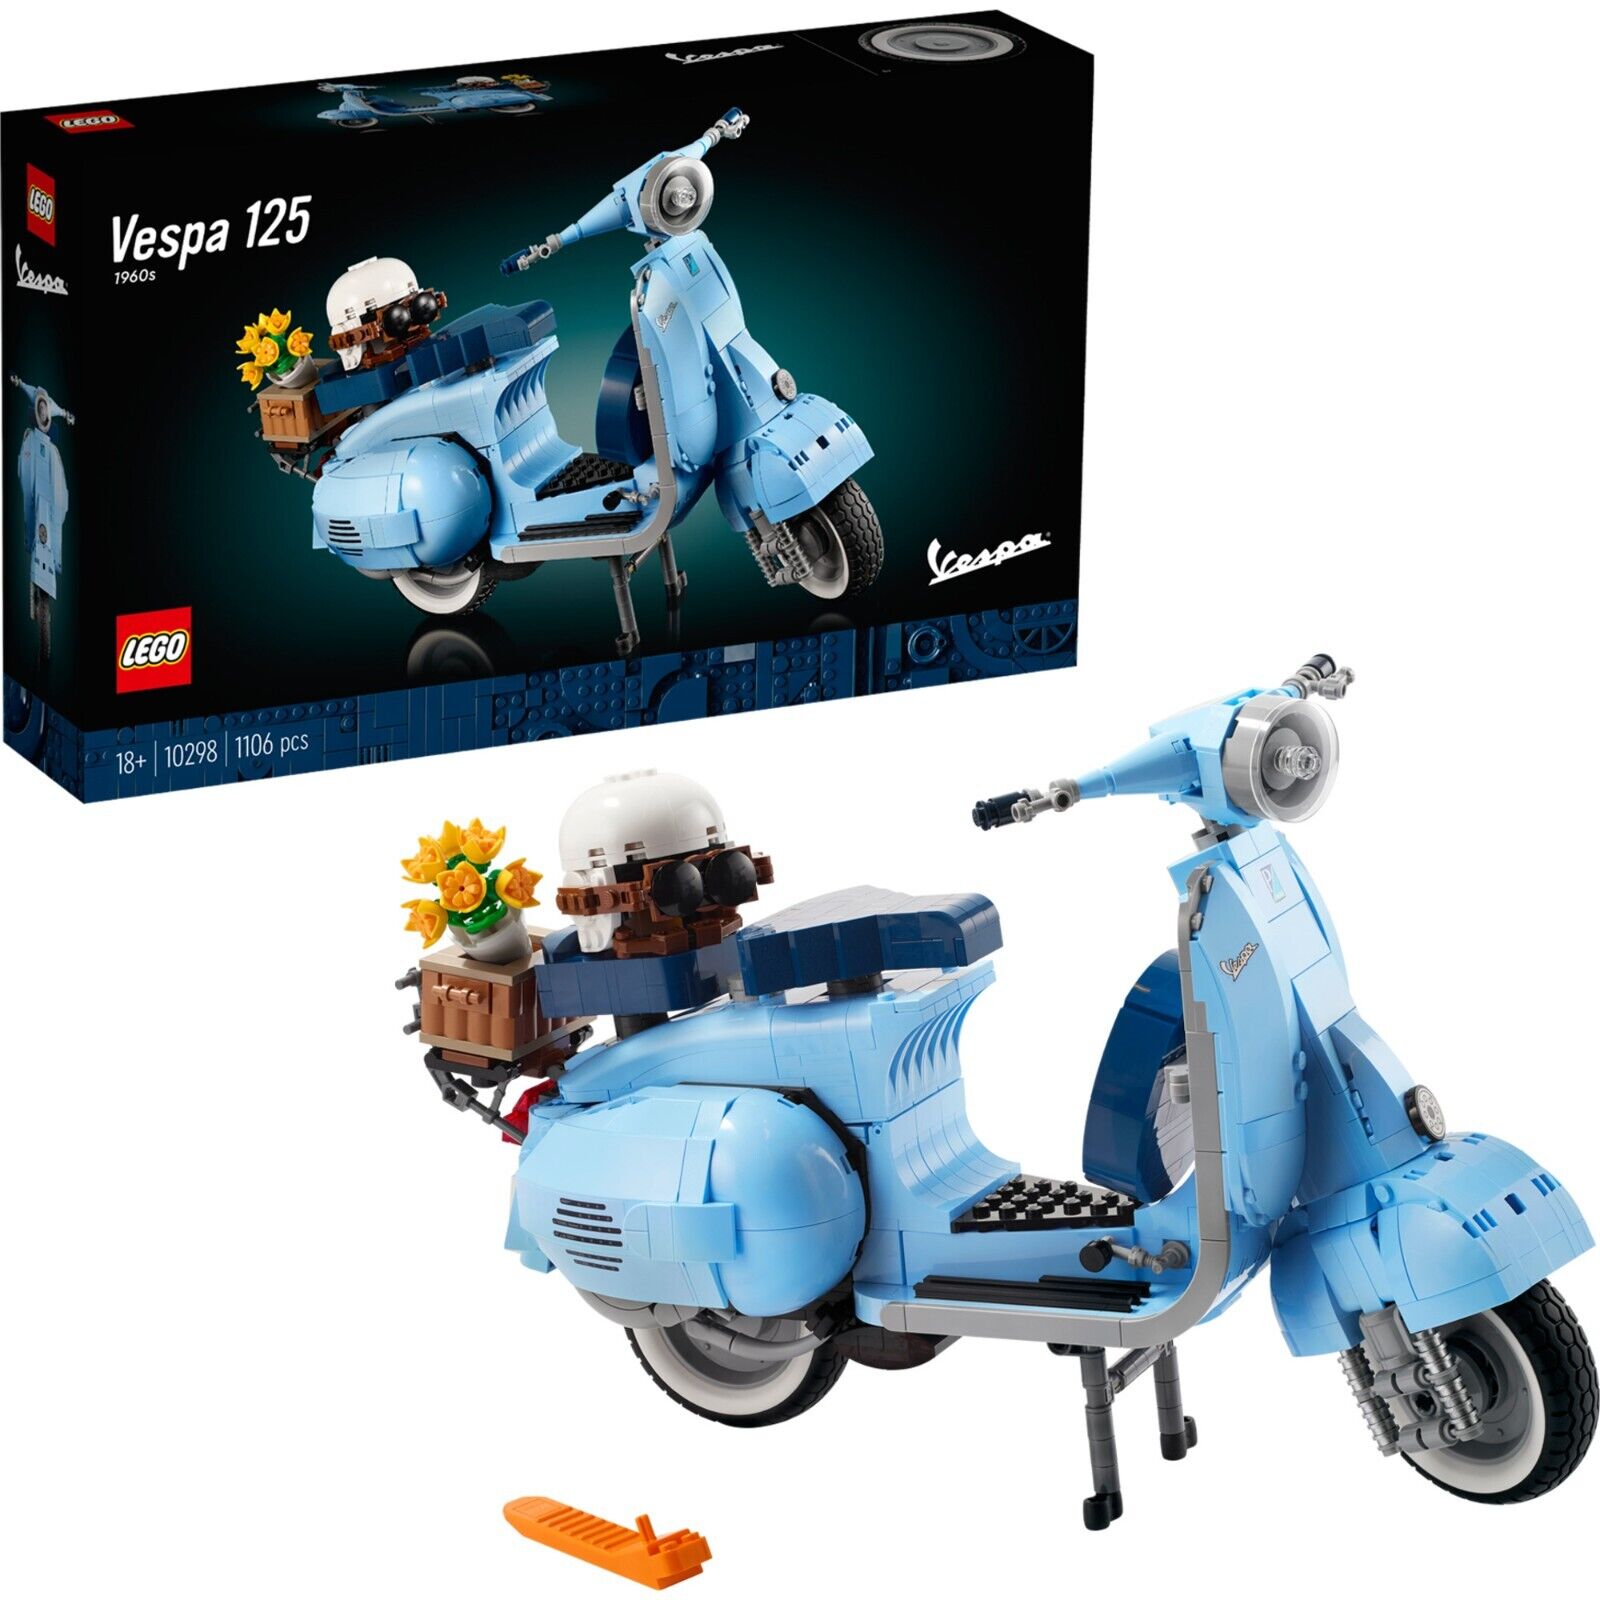 Bild zu Lego Creator Expert Vespa 125 (10298) für 59,90€ (Vergleich: 67,99€)